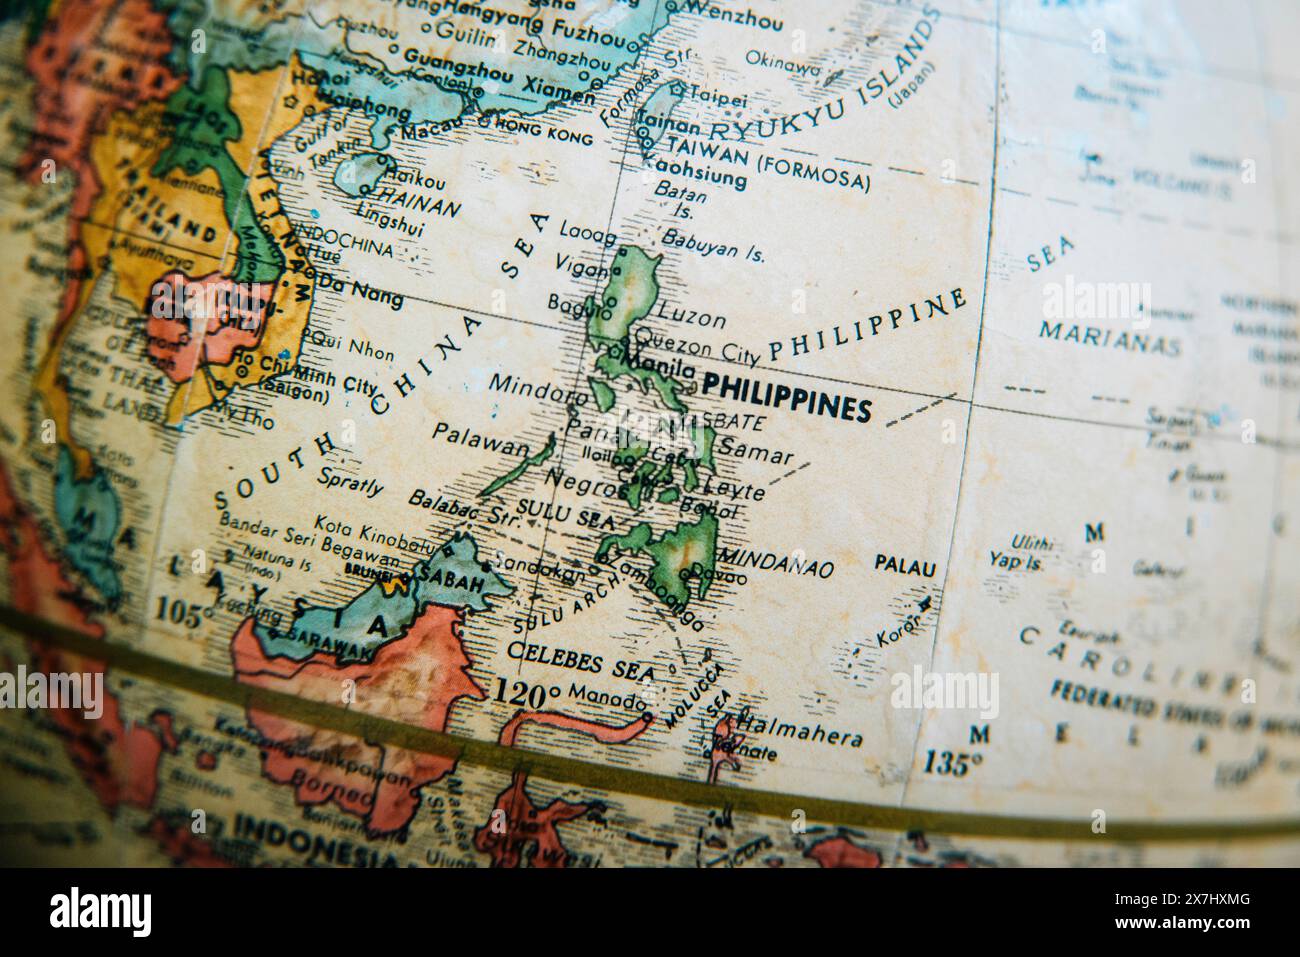 Una mappa vintage del mondo antico che mostra un dettaglio ravvicinato delle Filippine e dei paesi del sud-est asiatico circostanti. Foto Stock